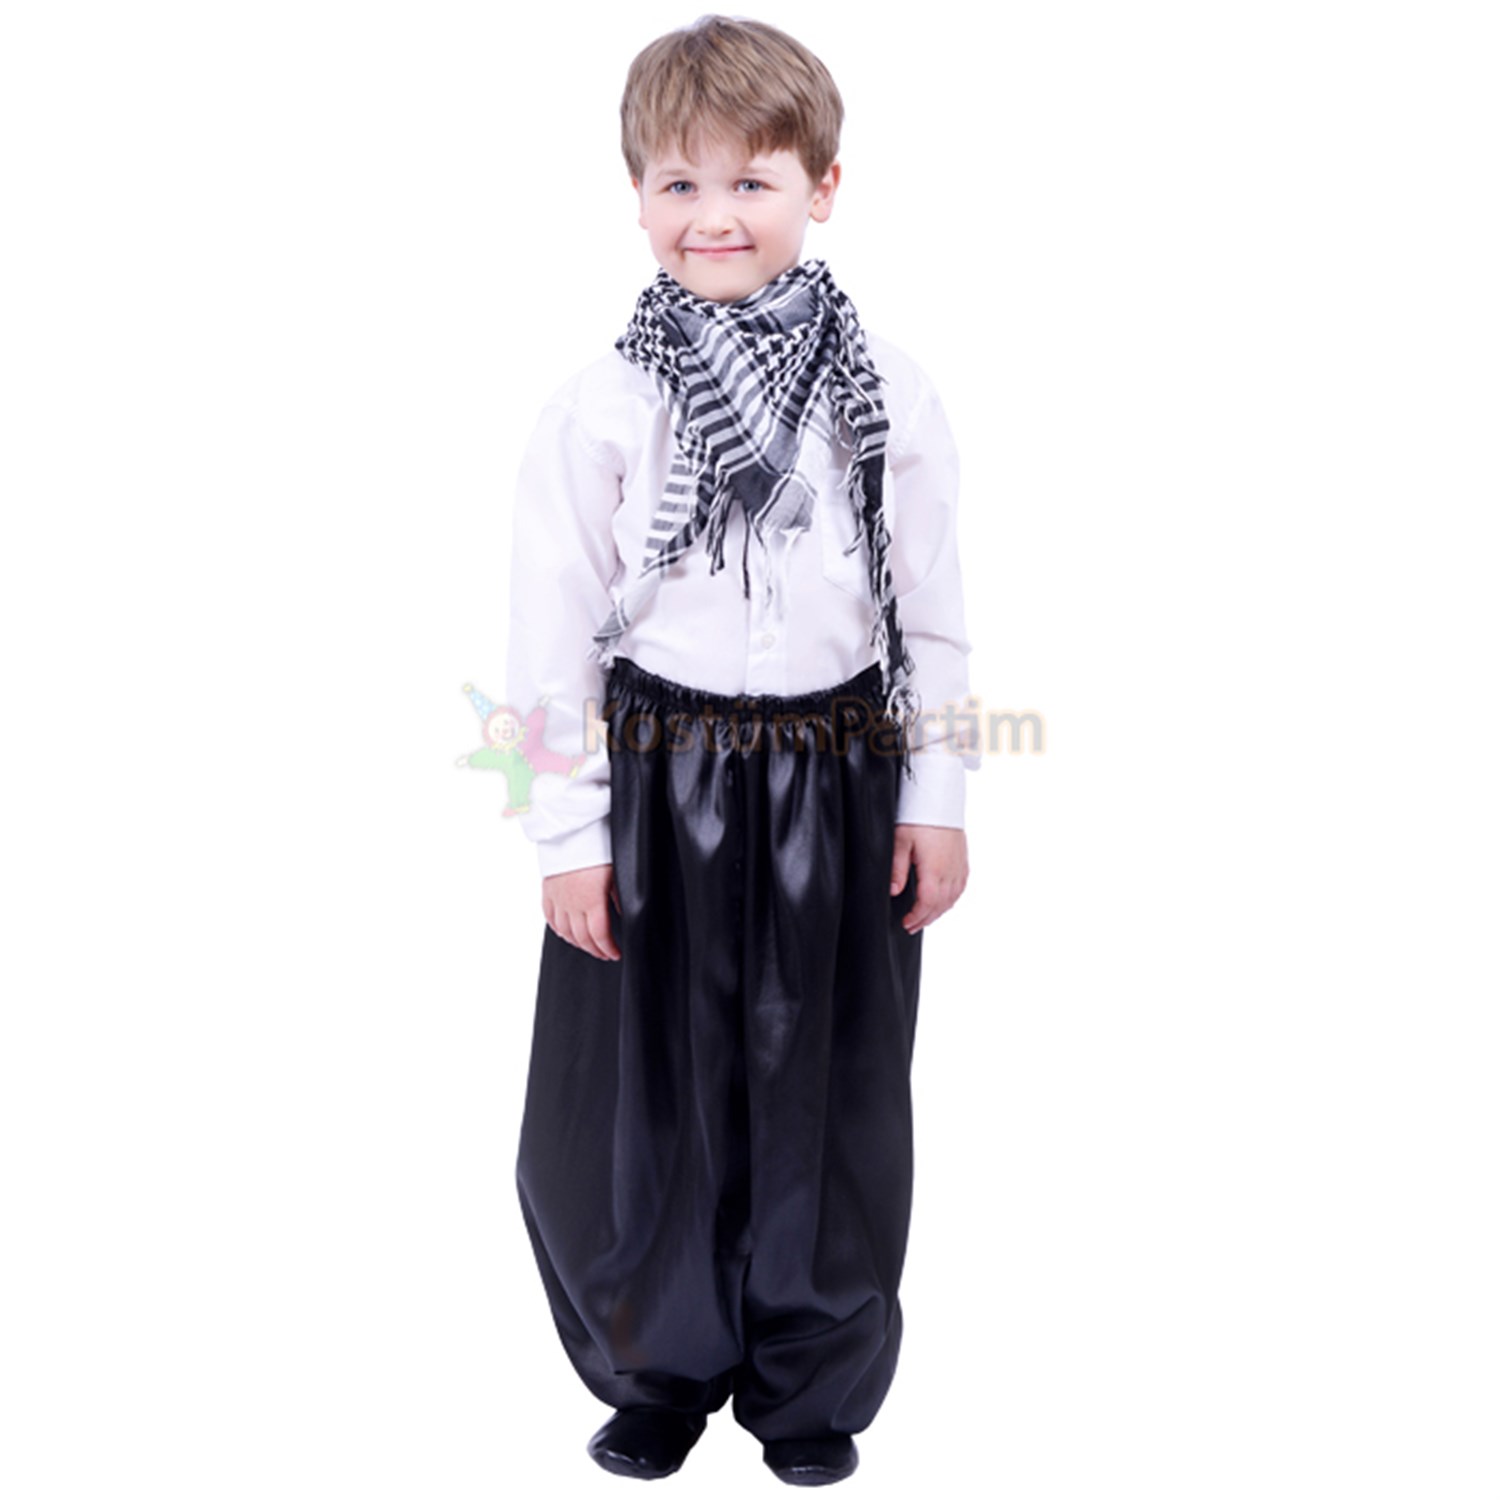 Köylü Kostümü, Erkek Çocuk Ağa Kıyafeti - KostümPartim®